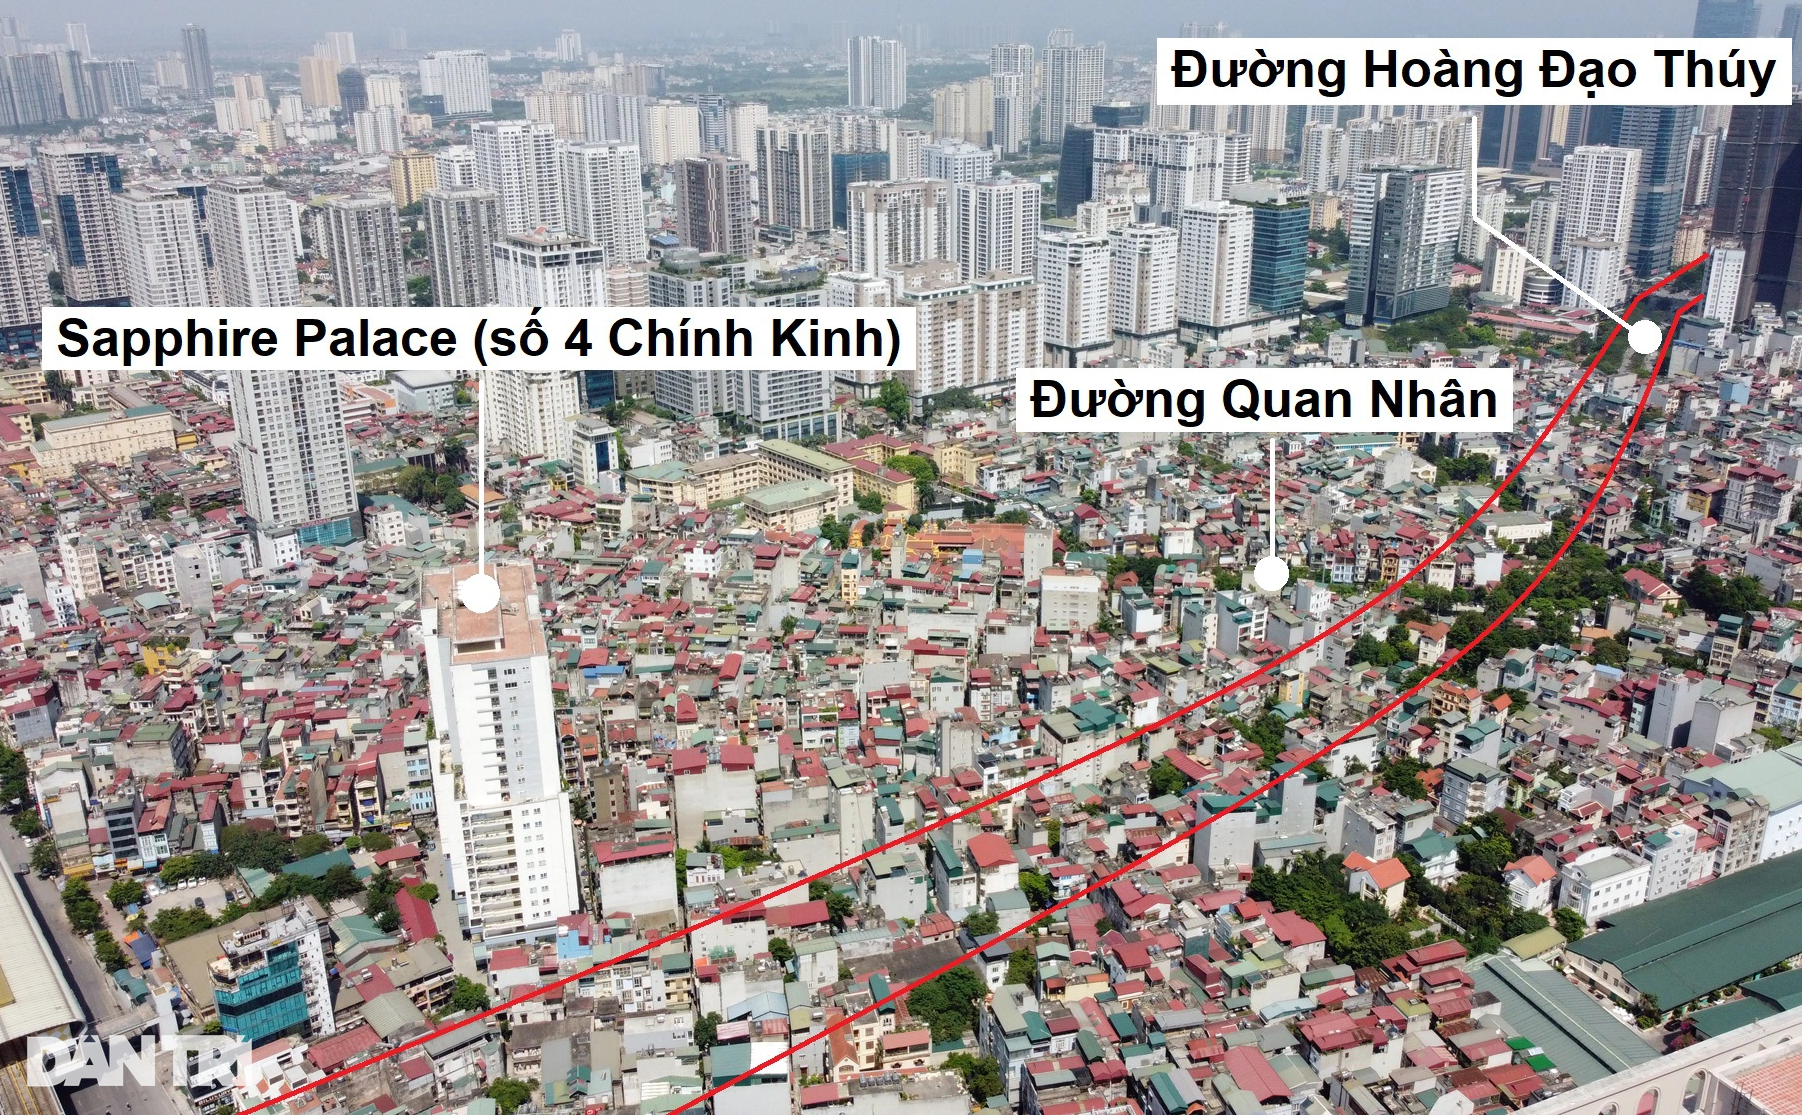 Toàn cảnh đường vành đai 2,5 đi qua nhiều khu đô thị ở Hà Nội - 11